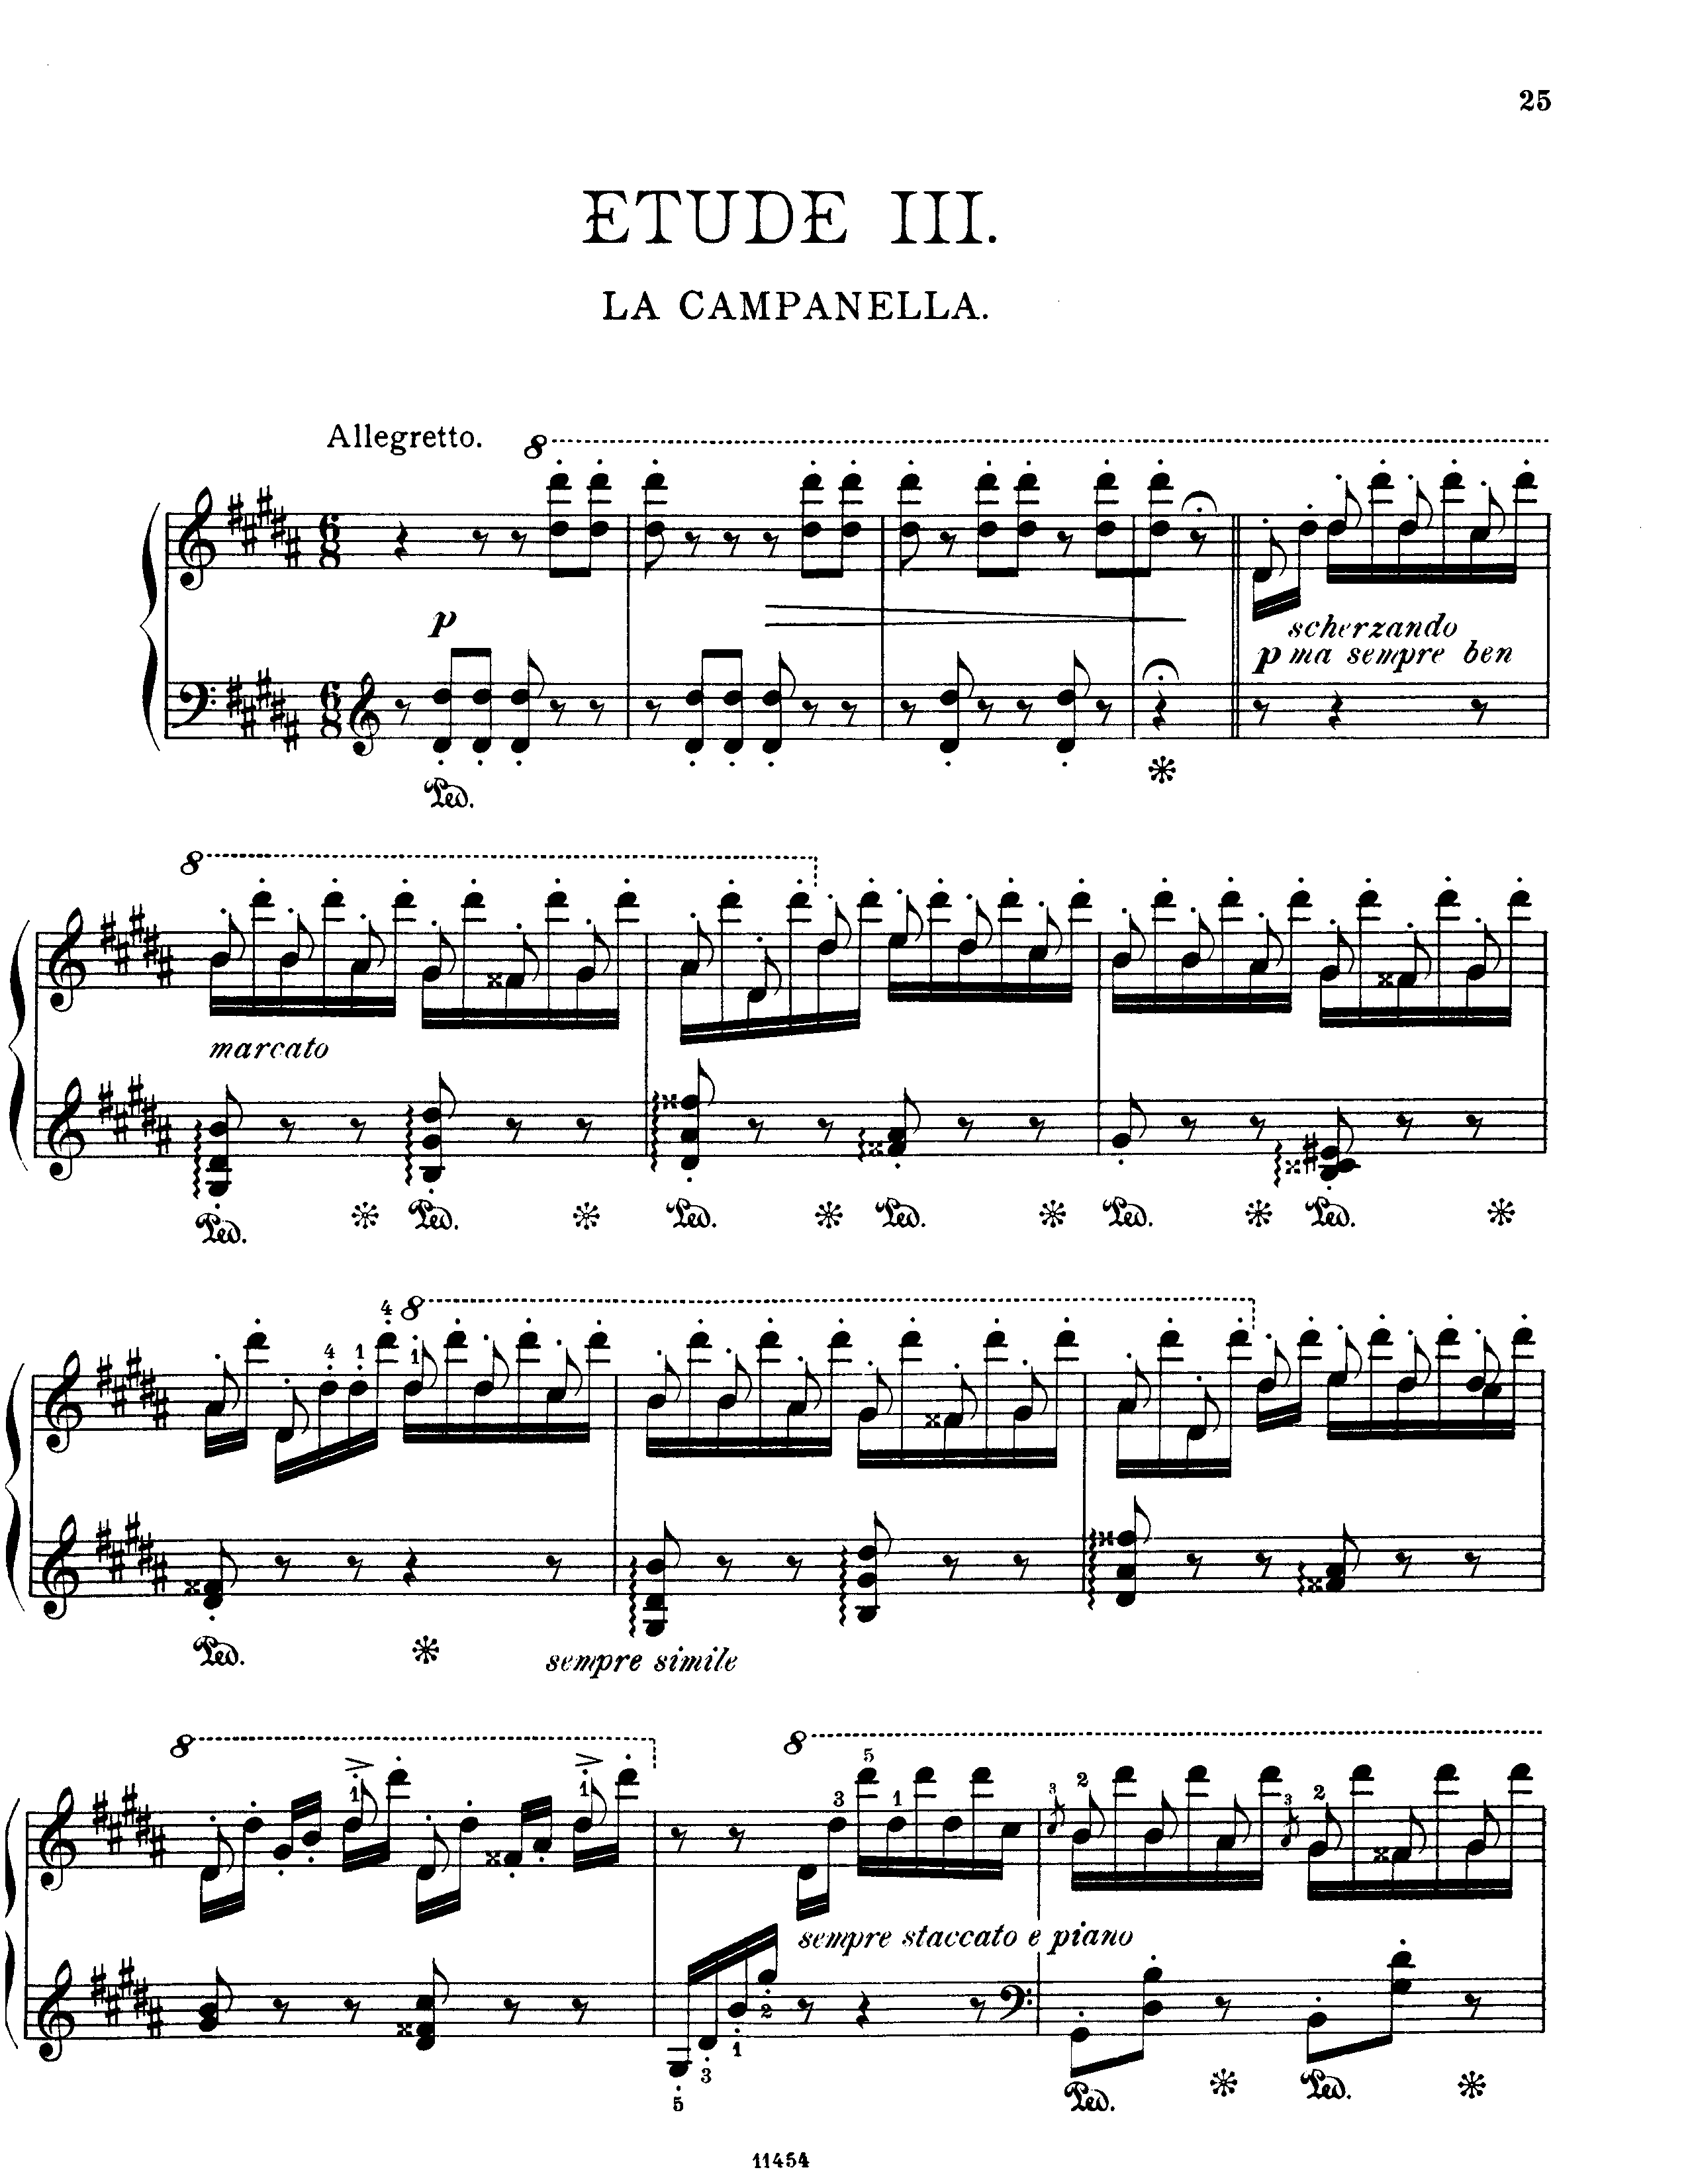 La campanella in G-Sharp Minor (From Grandes études de Paganini, S. 141 / 3)ピアノ譜